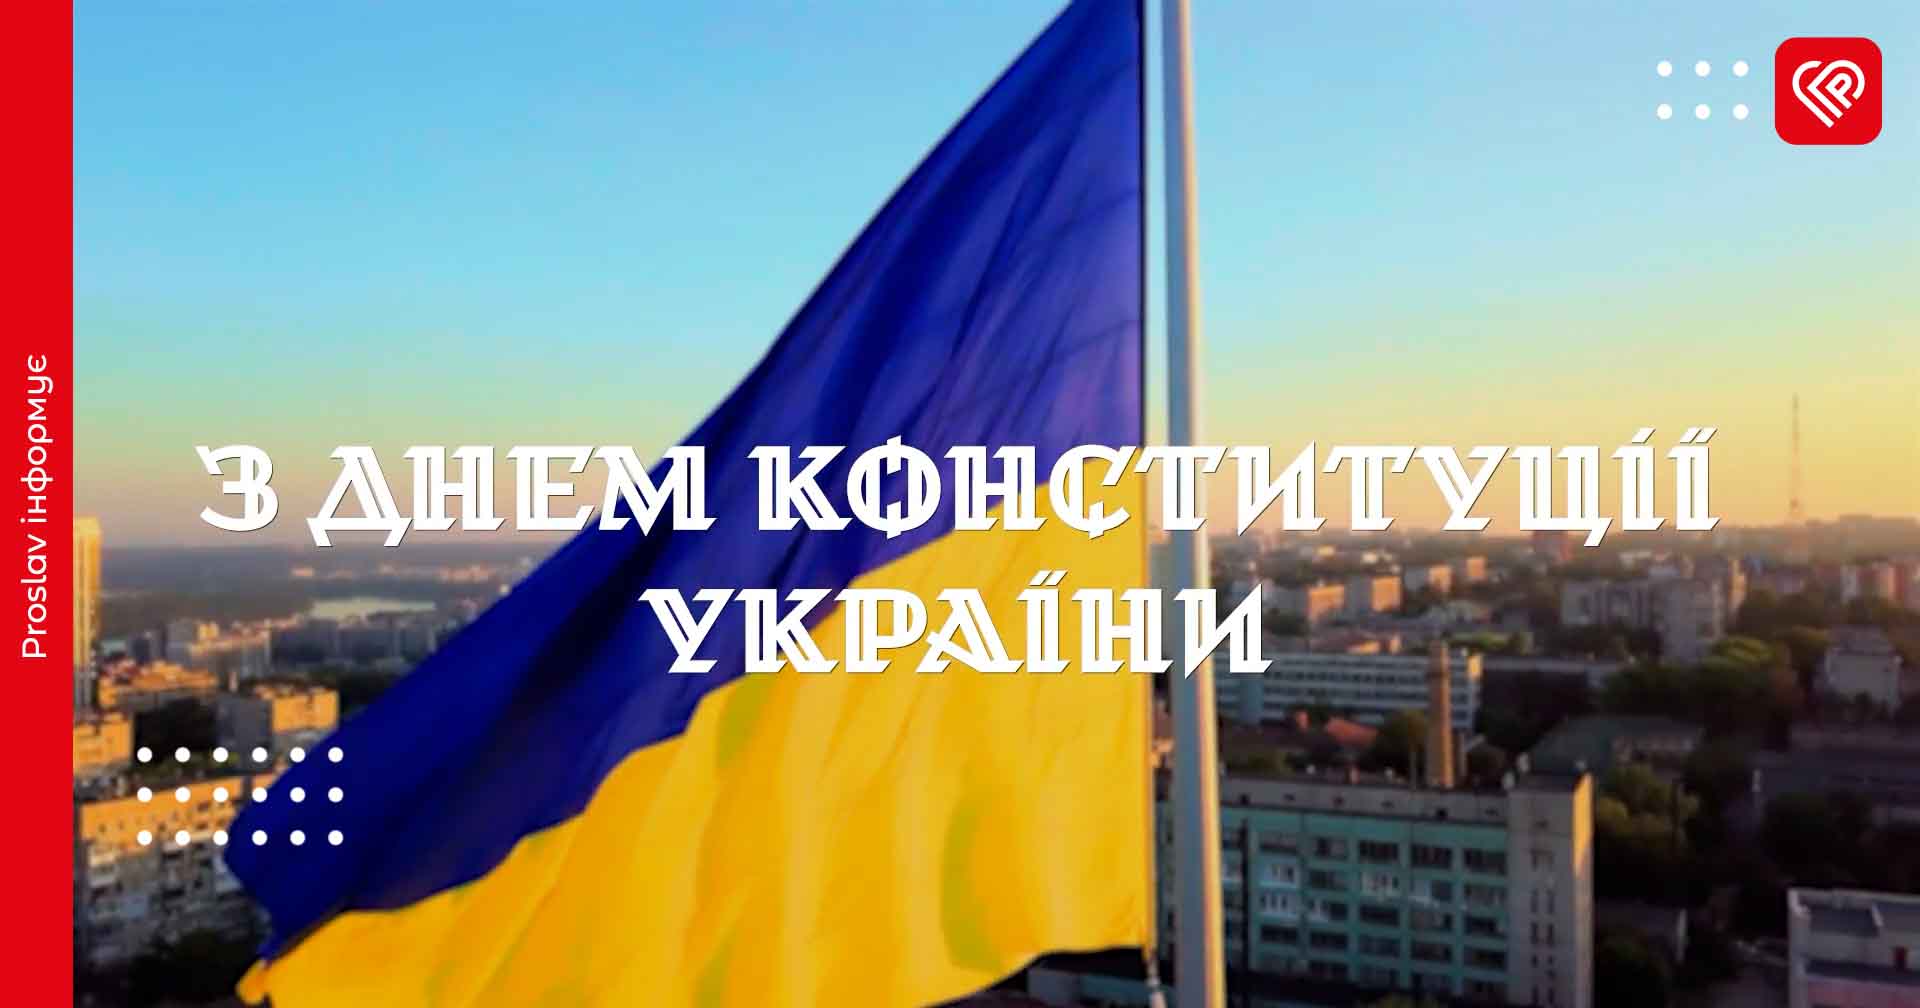 Привітання від НГУ з Днем Конституції України (відео)